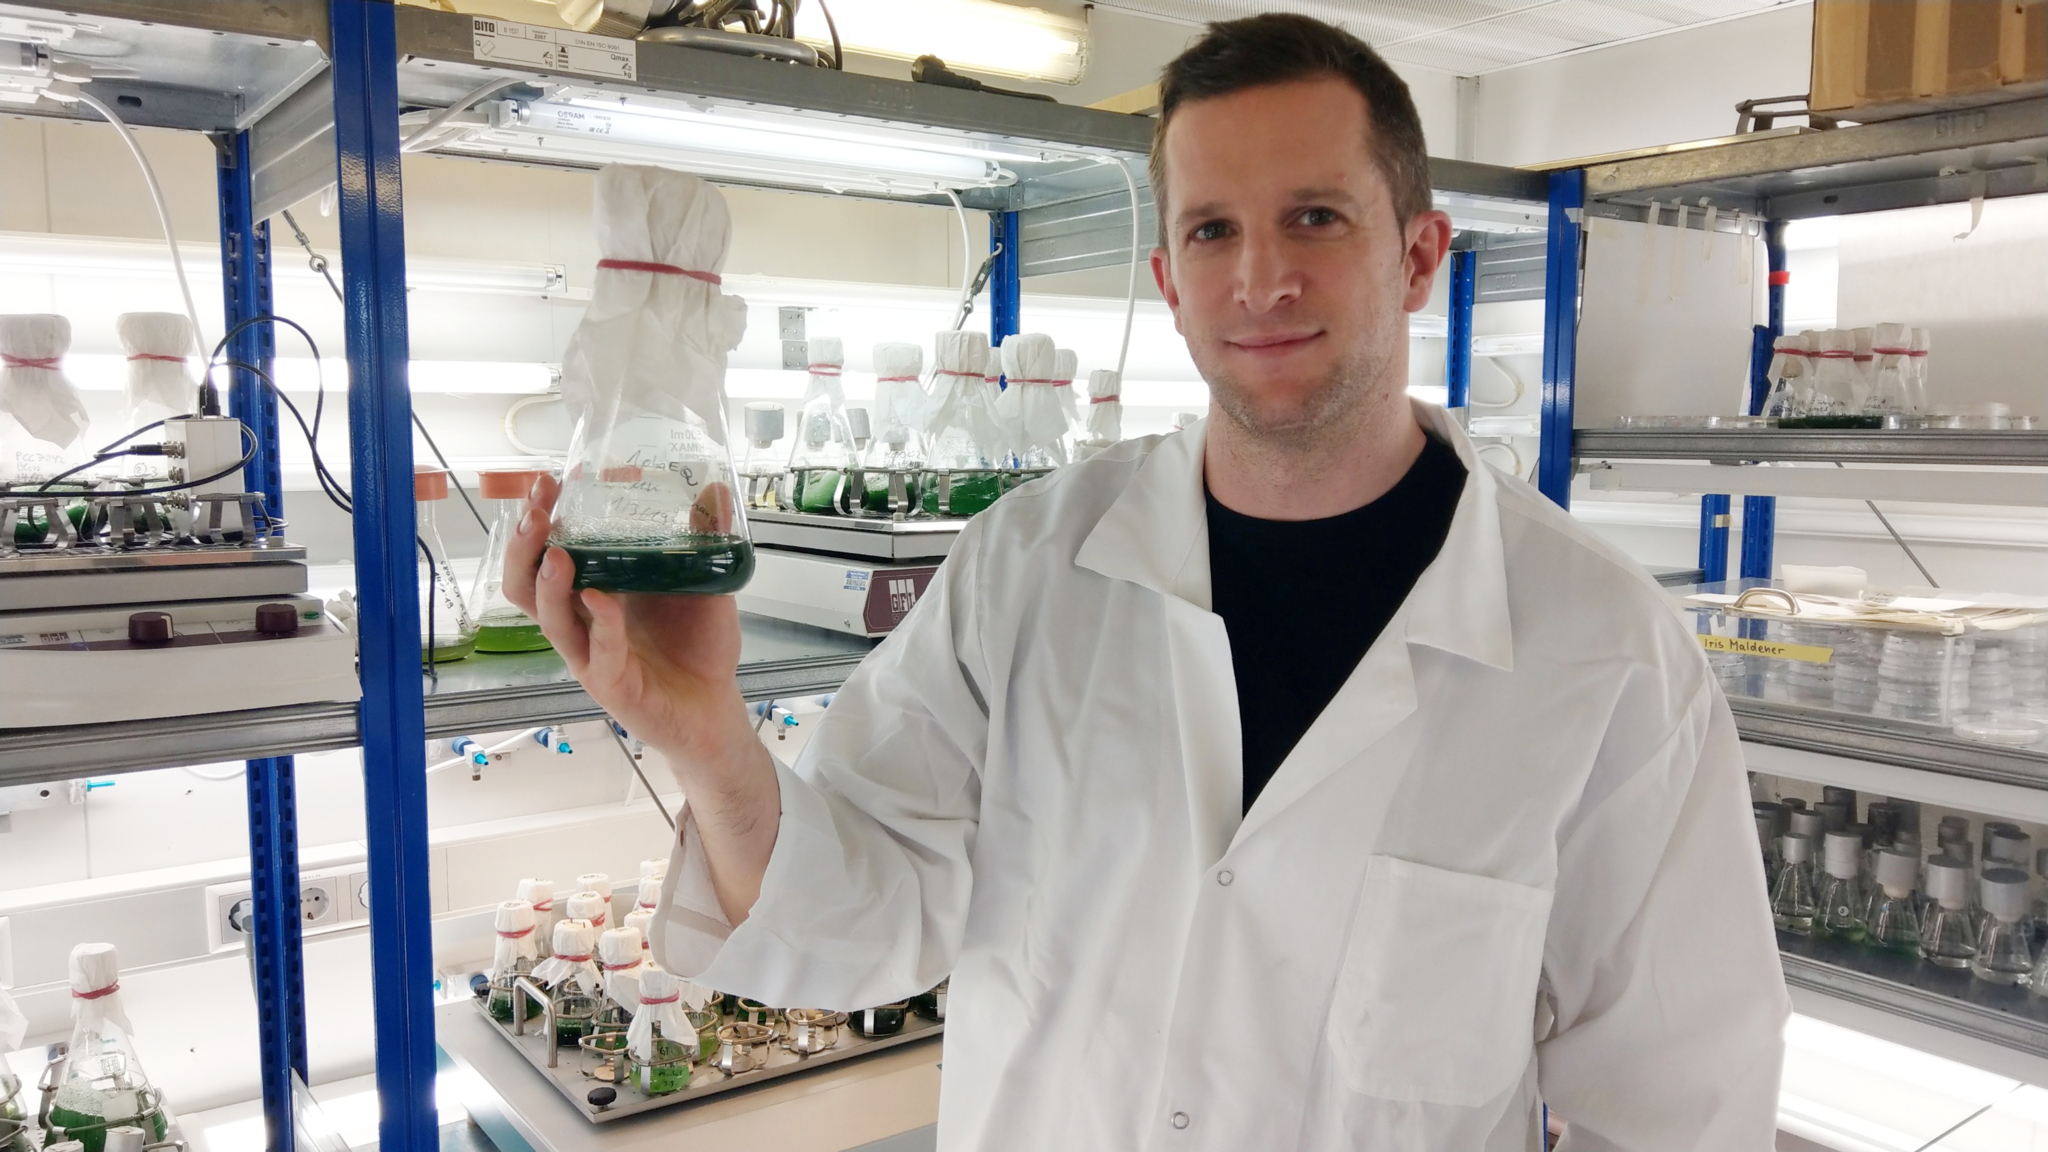 Der Forscher im Labor, wie er einen Erlenmeyer-Kolben mit grüner Cyanobakterien-Kultur in der Hand hält.